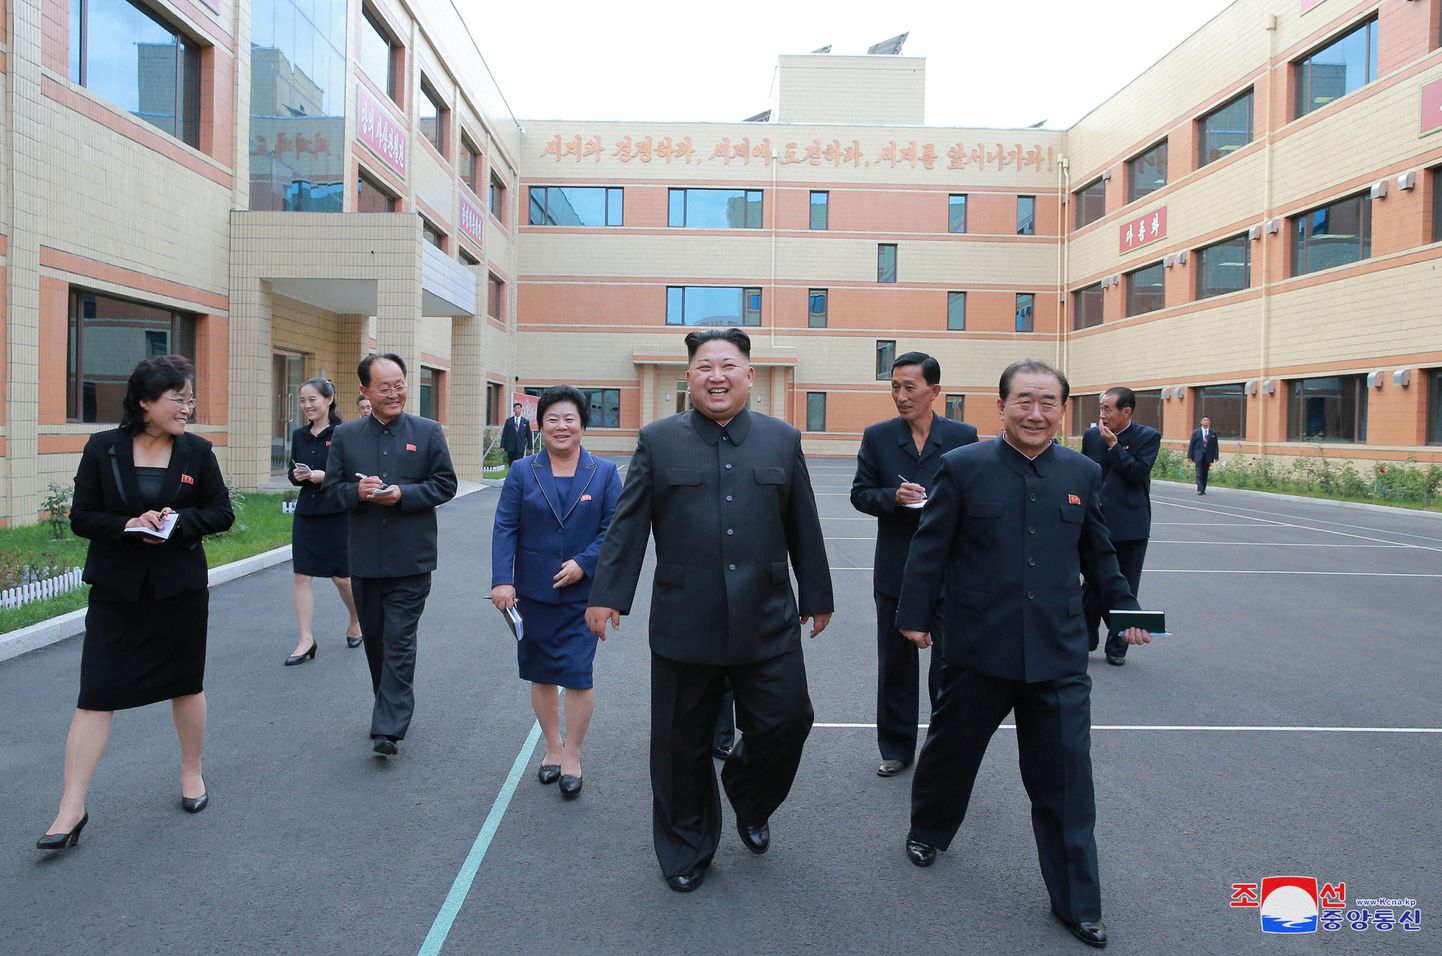 Kim Jong-un Ryuwoni jalatsivabrikut külastamas.